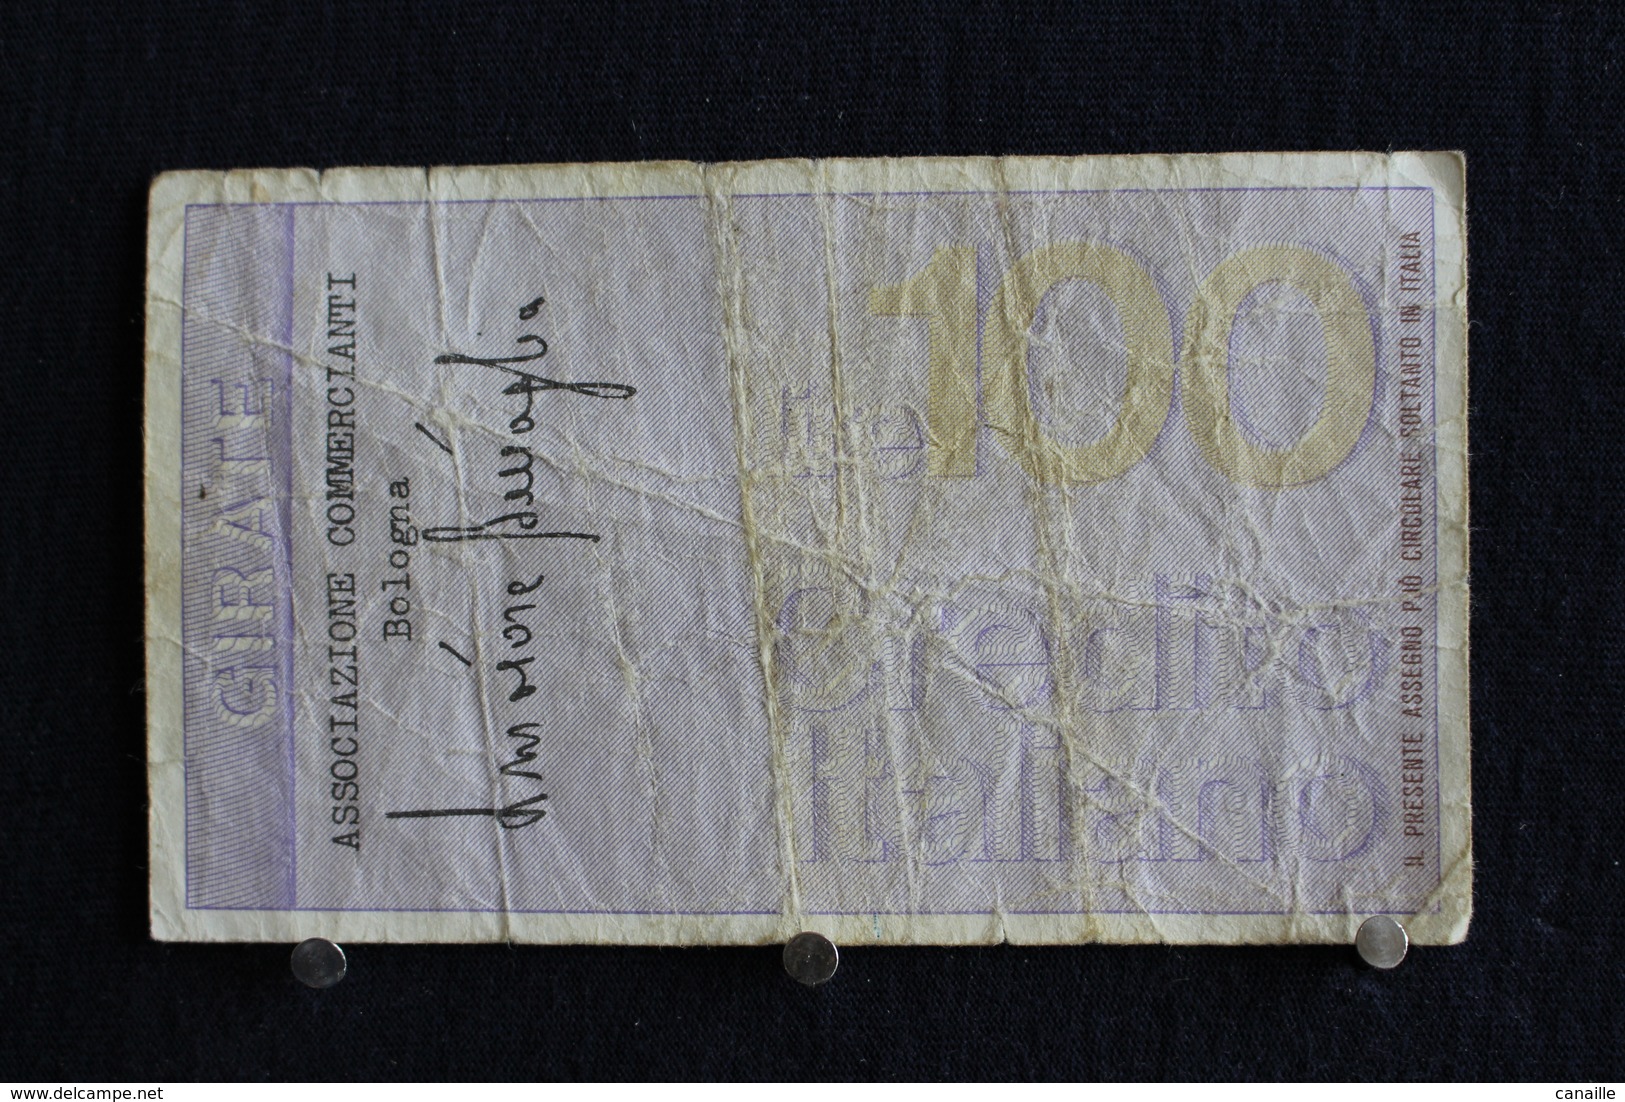 14 / Italie / 1946: Royaume / Credito Italiano Bologna  9/3/1976 - Vale 100 Lire - - 100 Lire